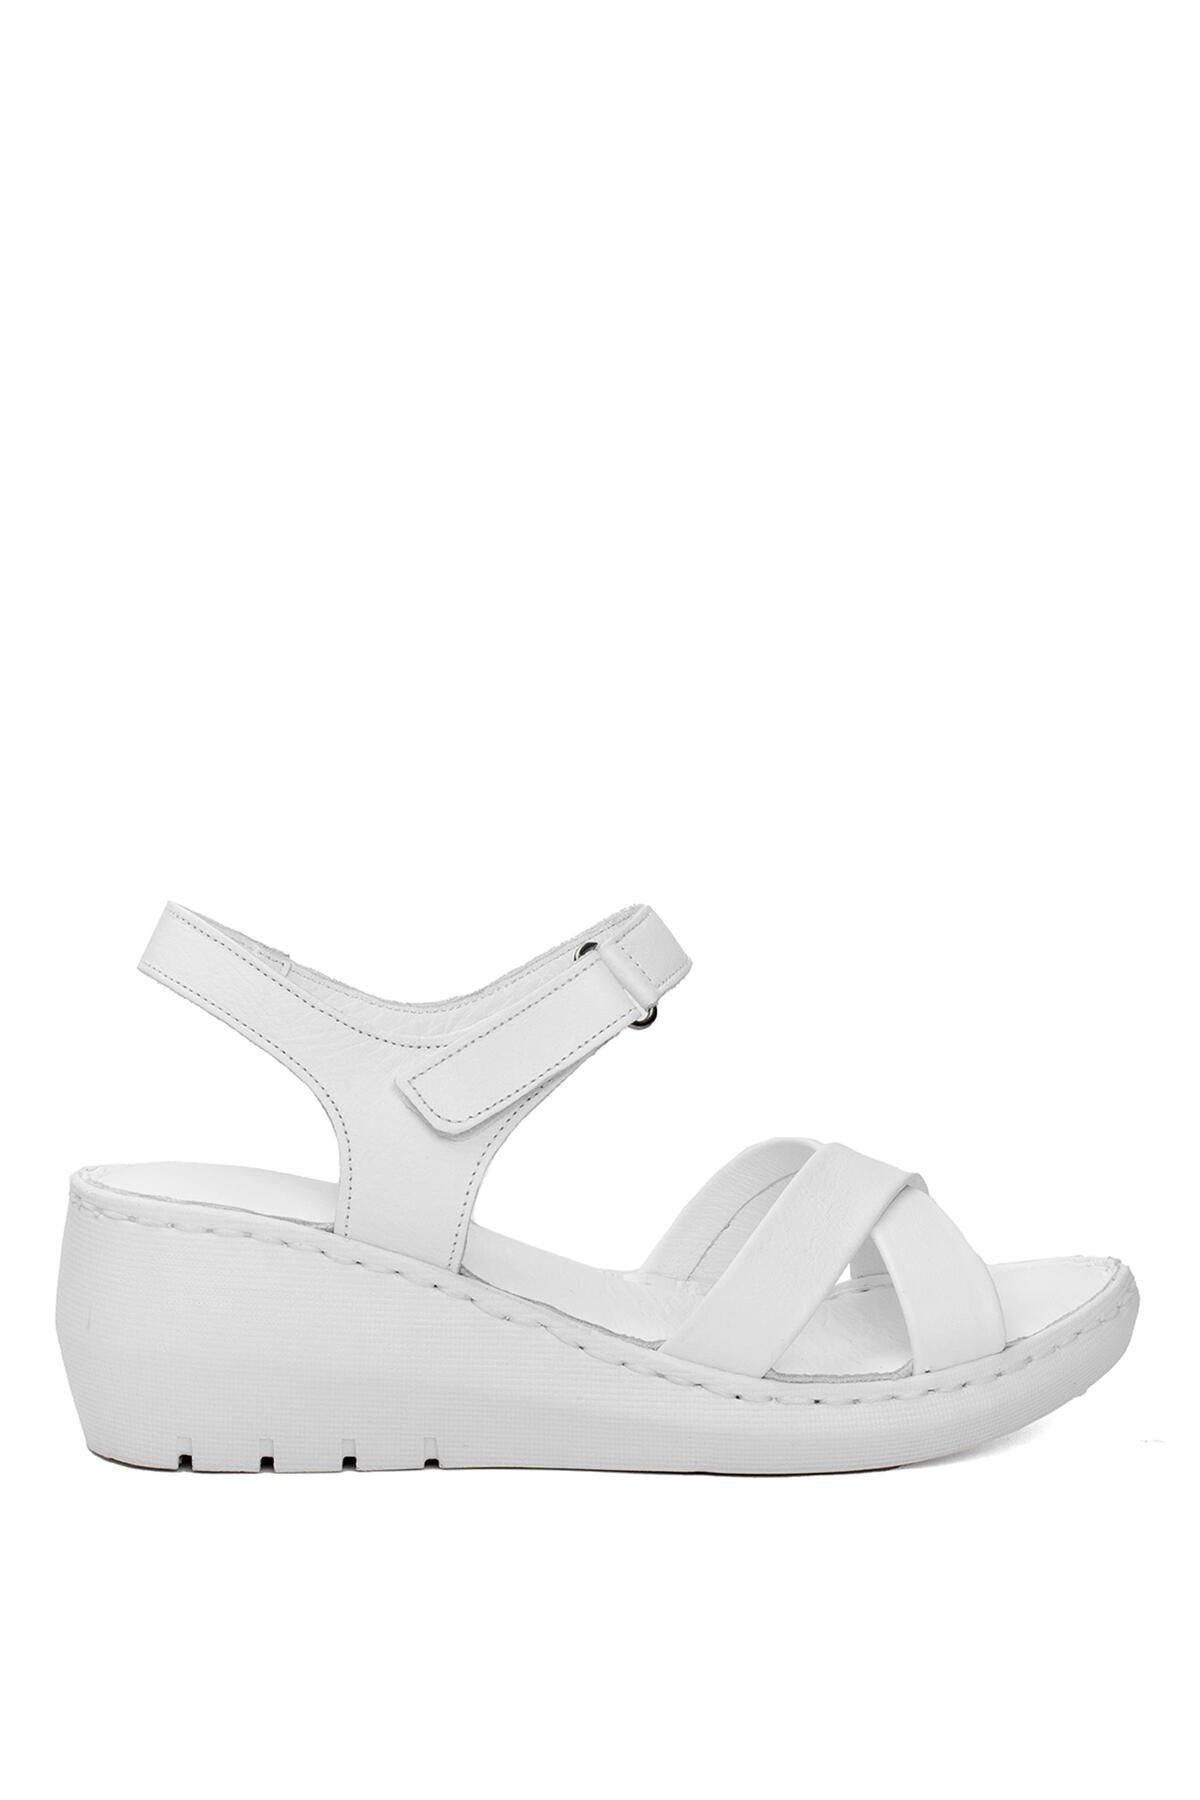 Mammamia D24YS-1380 Kadın Dolgu Topuk Sandalet Beyaz